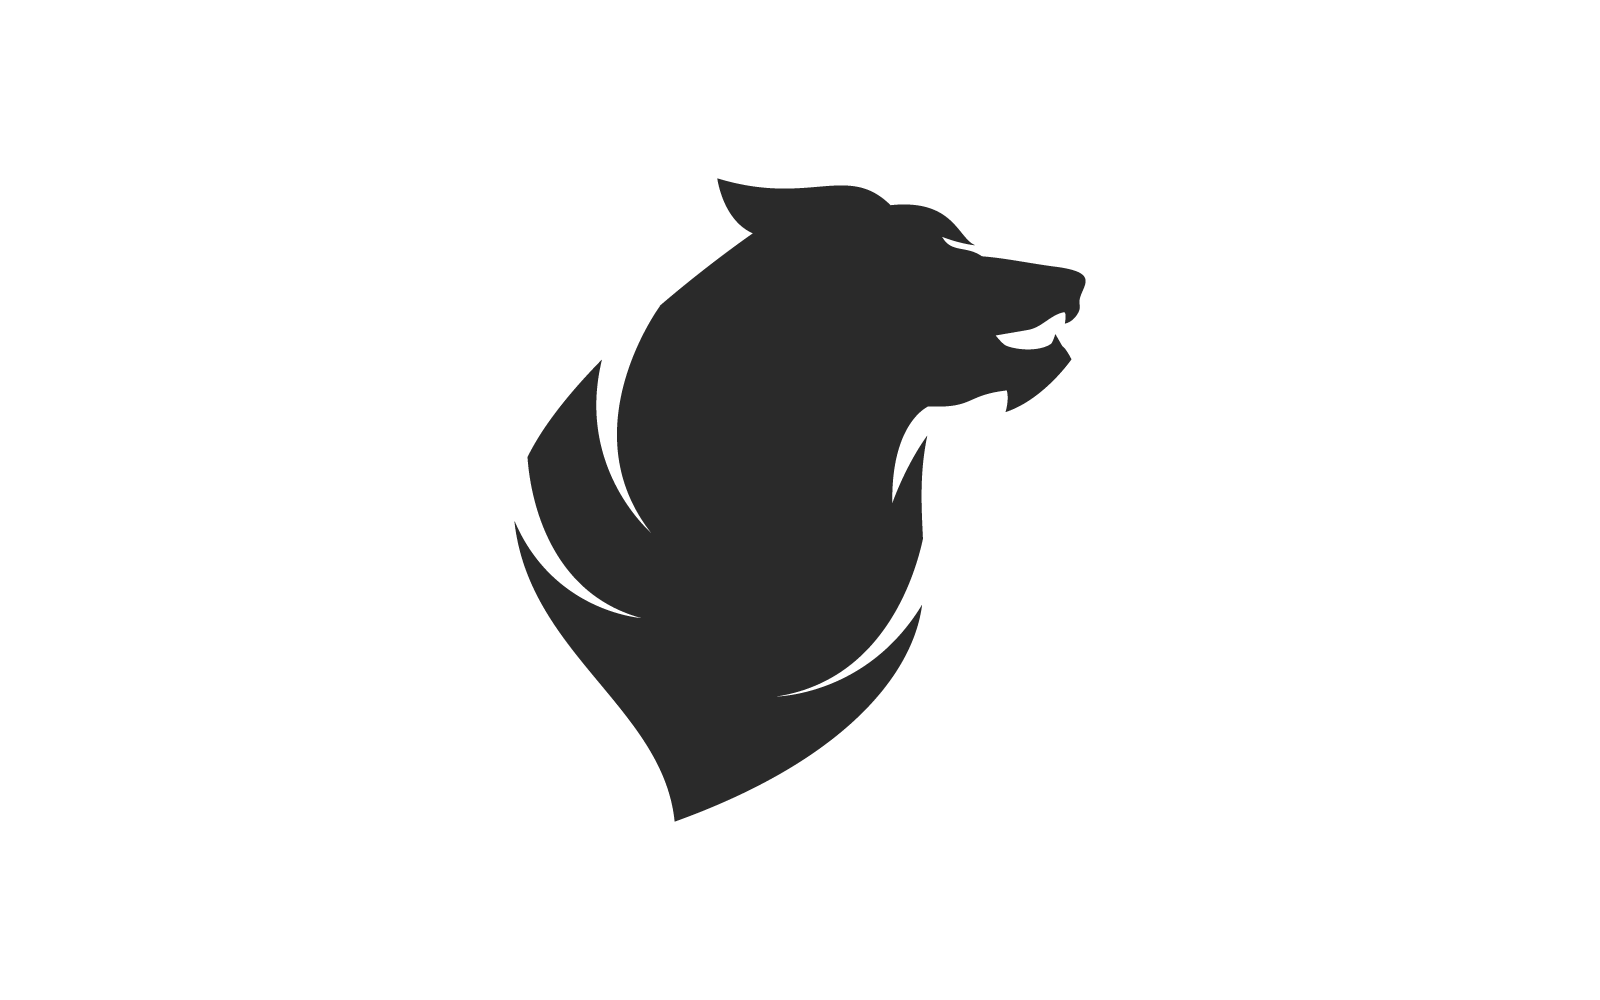 Lion logo illustration design template